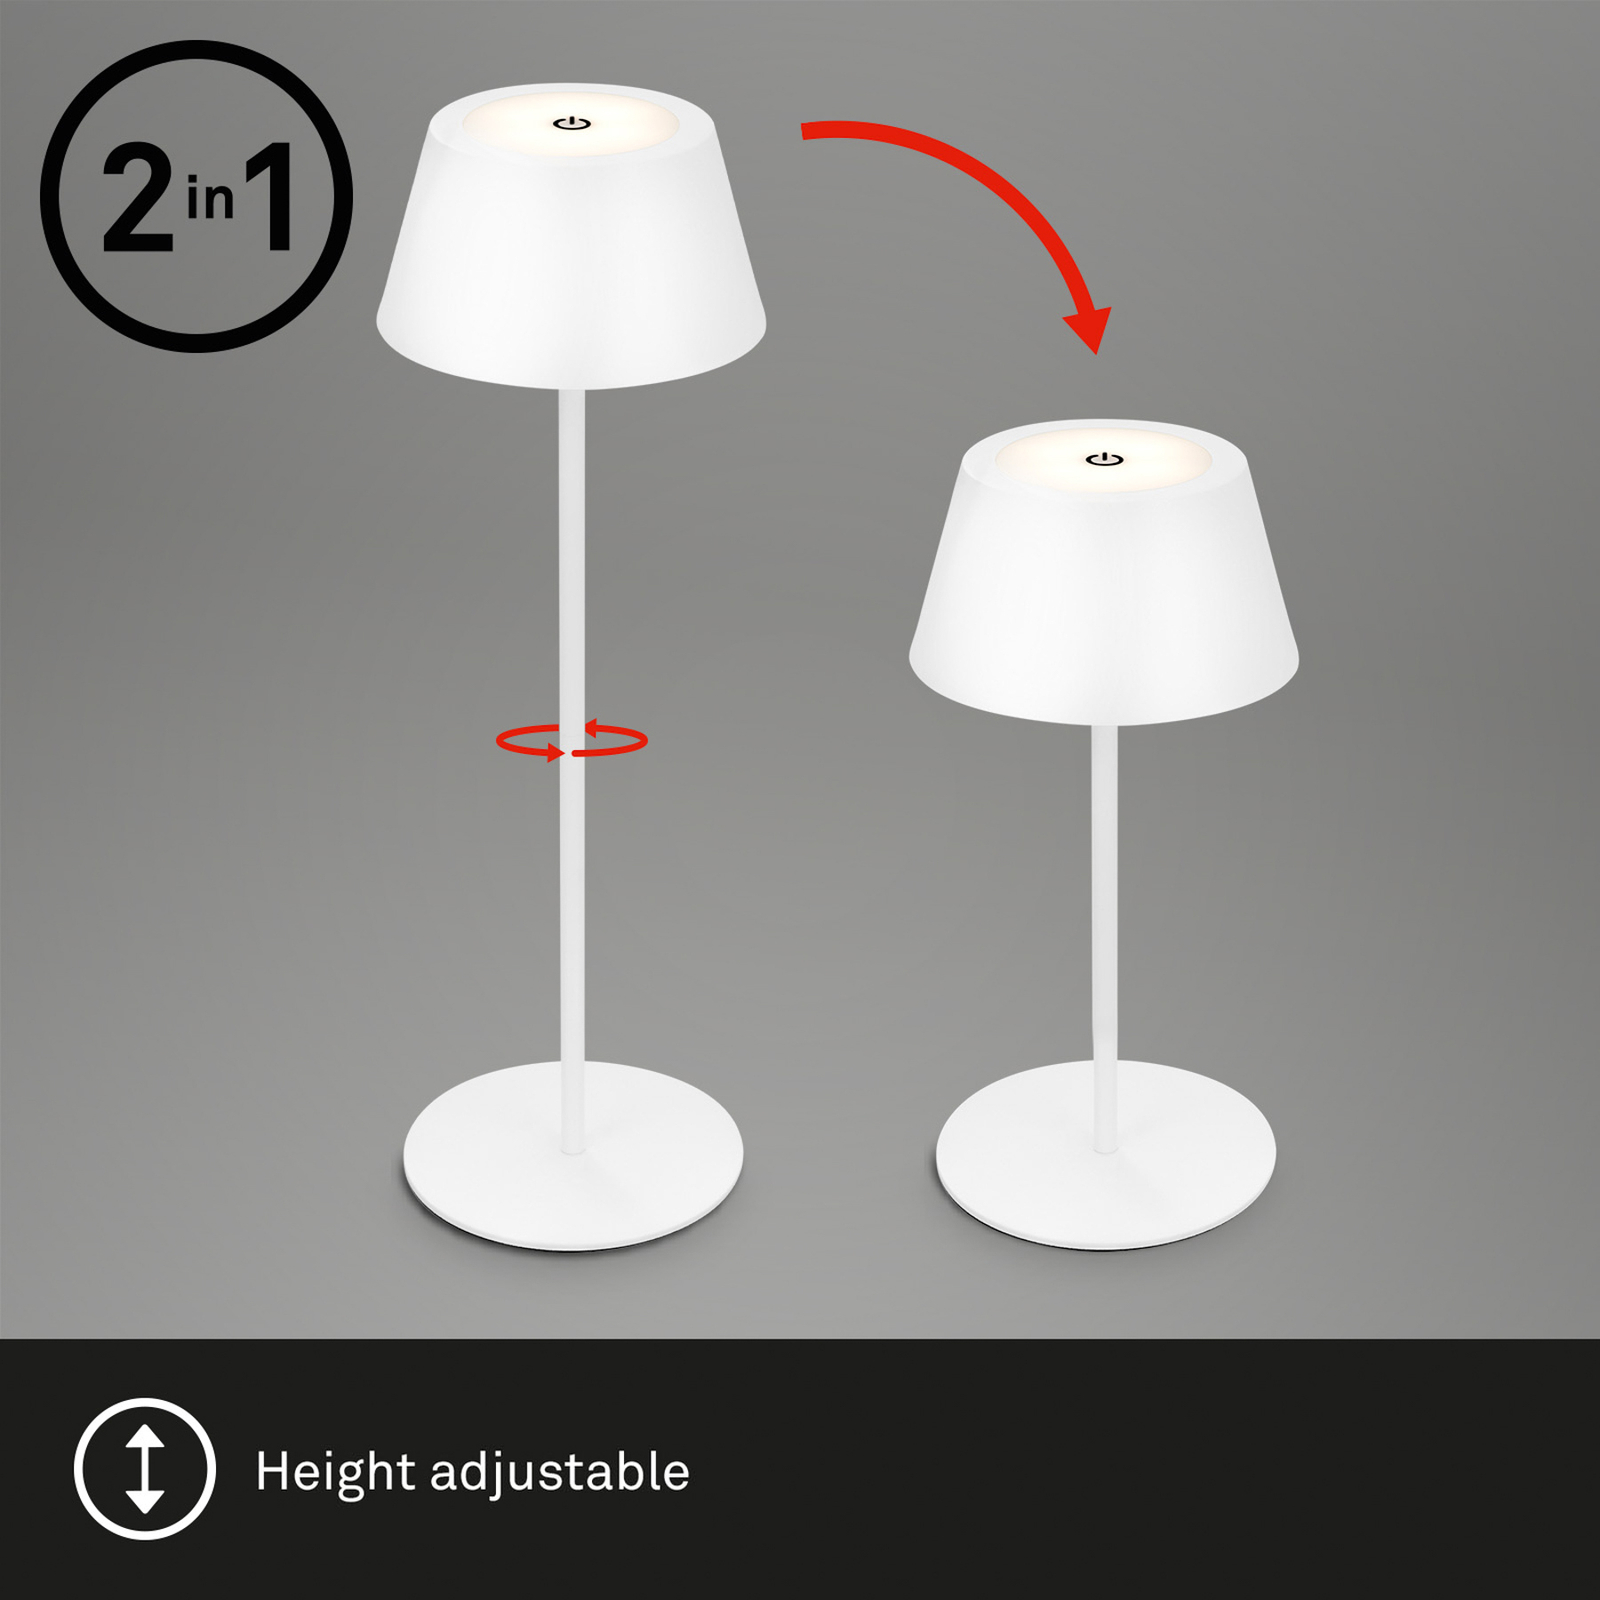 Lampe de table LED Kiki avec accu RGBW, blanc